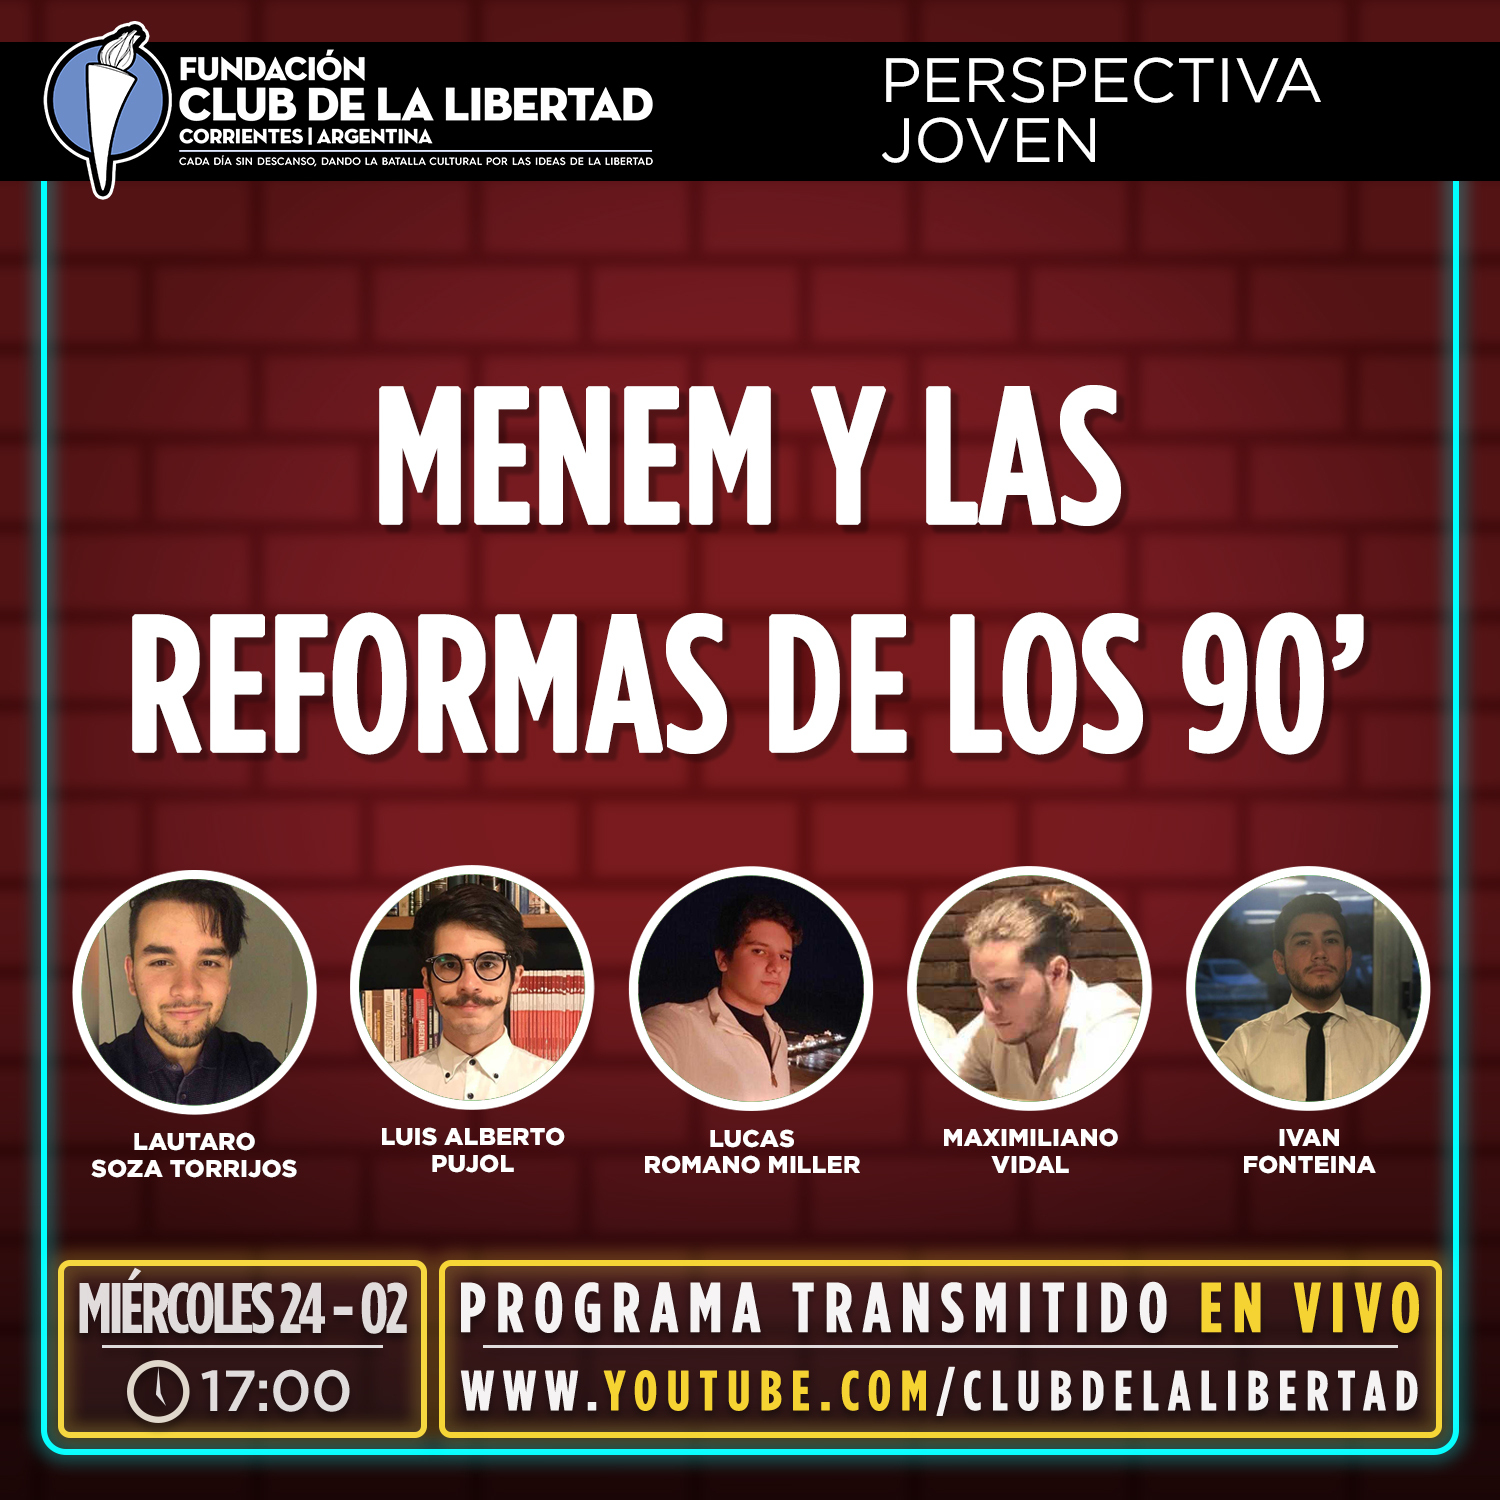 En este momento estás viendo Crónica Perspectiva Joven: Menem y las reformas de los 90′.